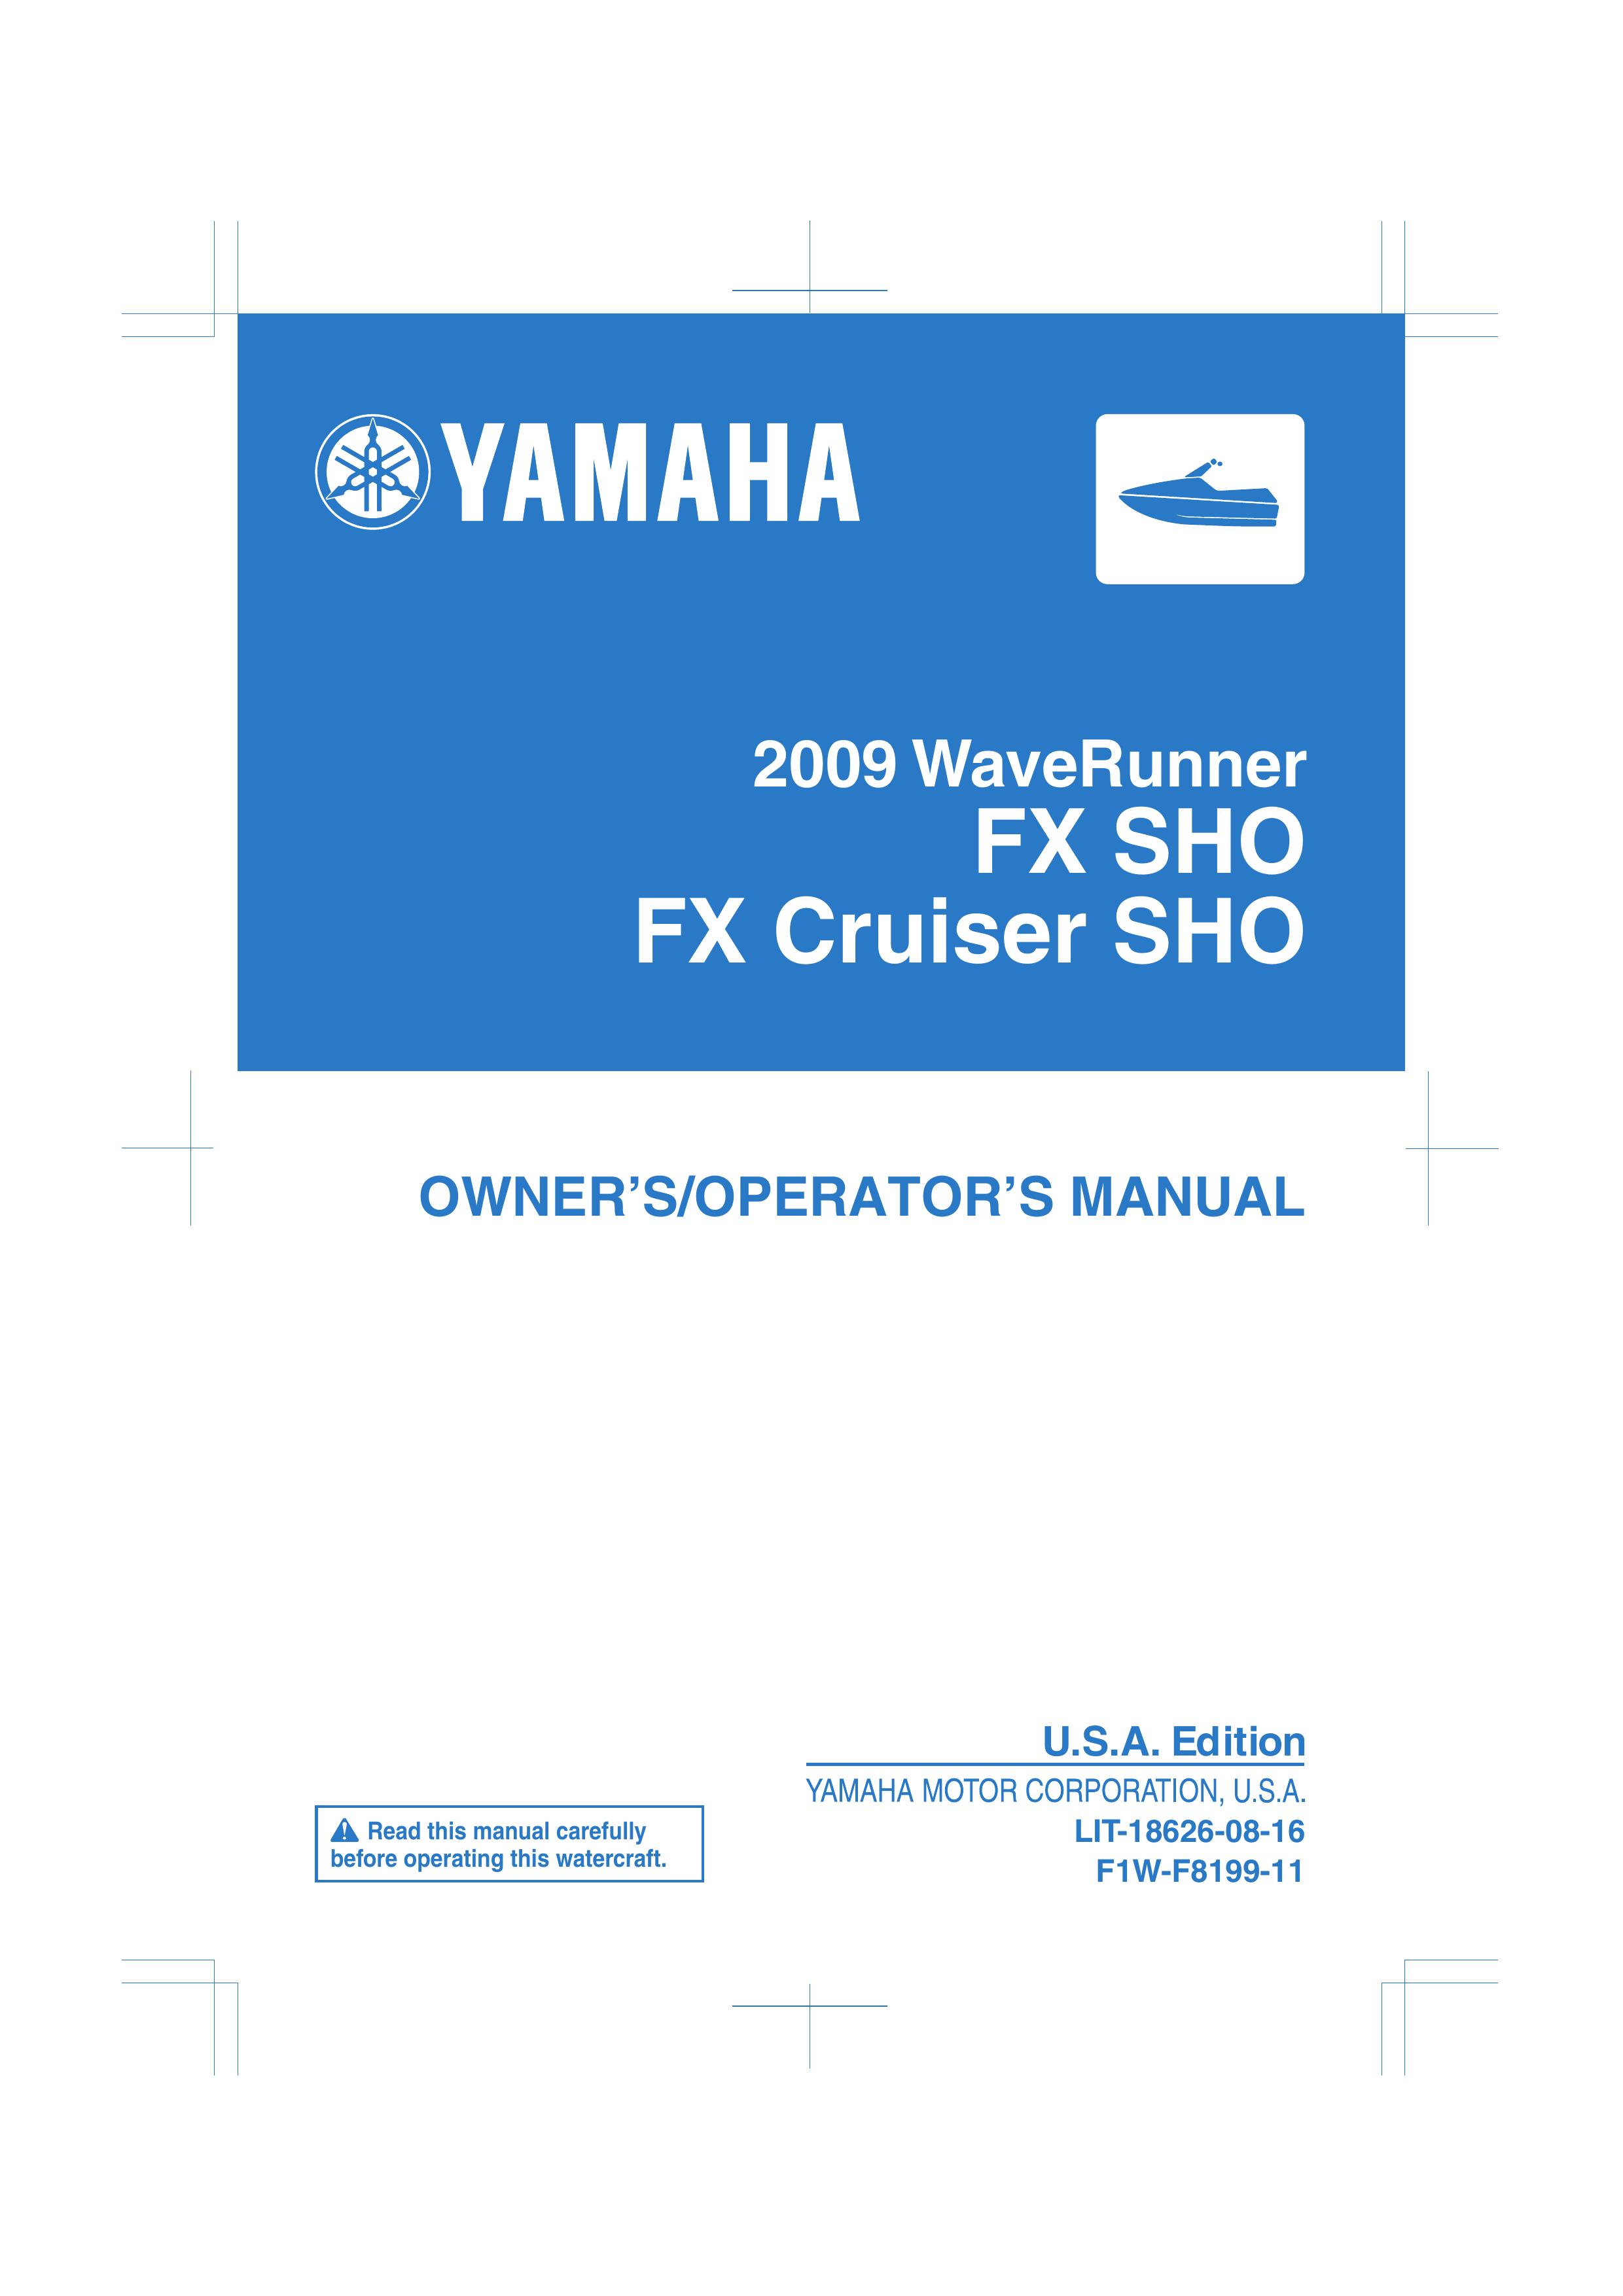 Yamaha FX SHO Jet Ski User Manual